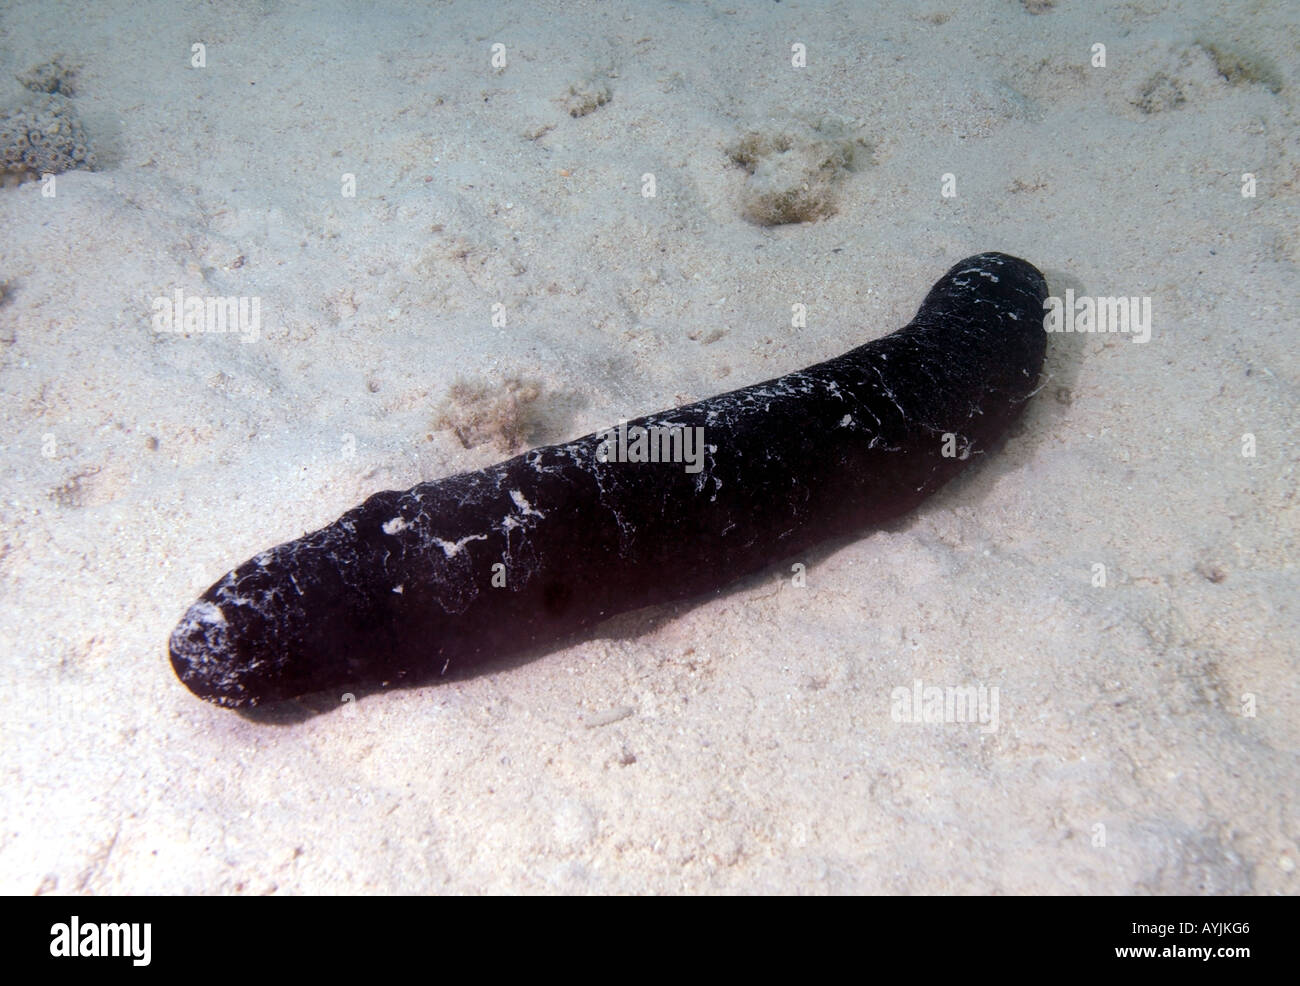 Sea cucumber Holothuria sp Stock Photo